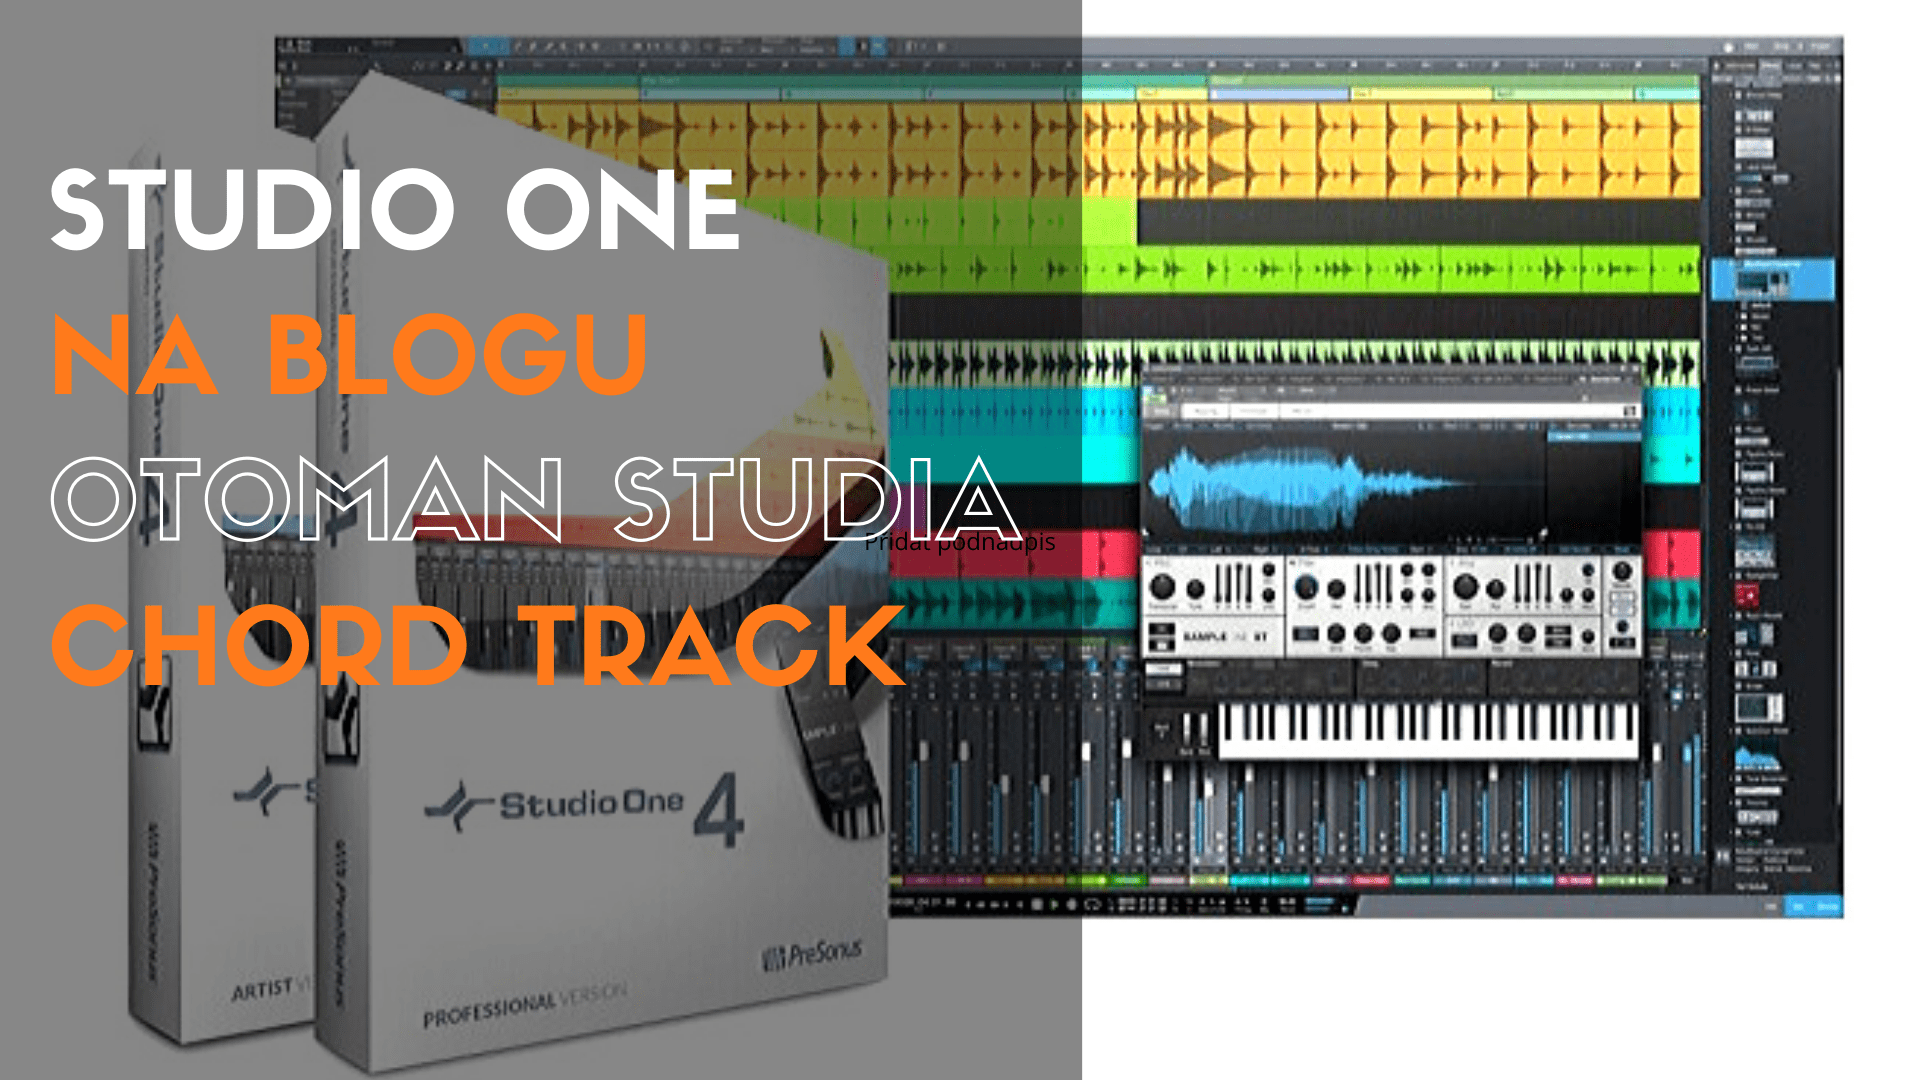 Studio One – Chord track